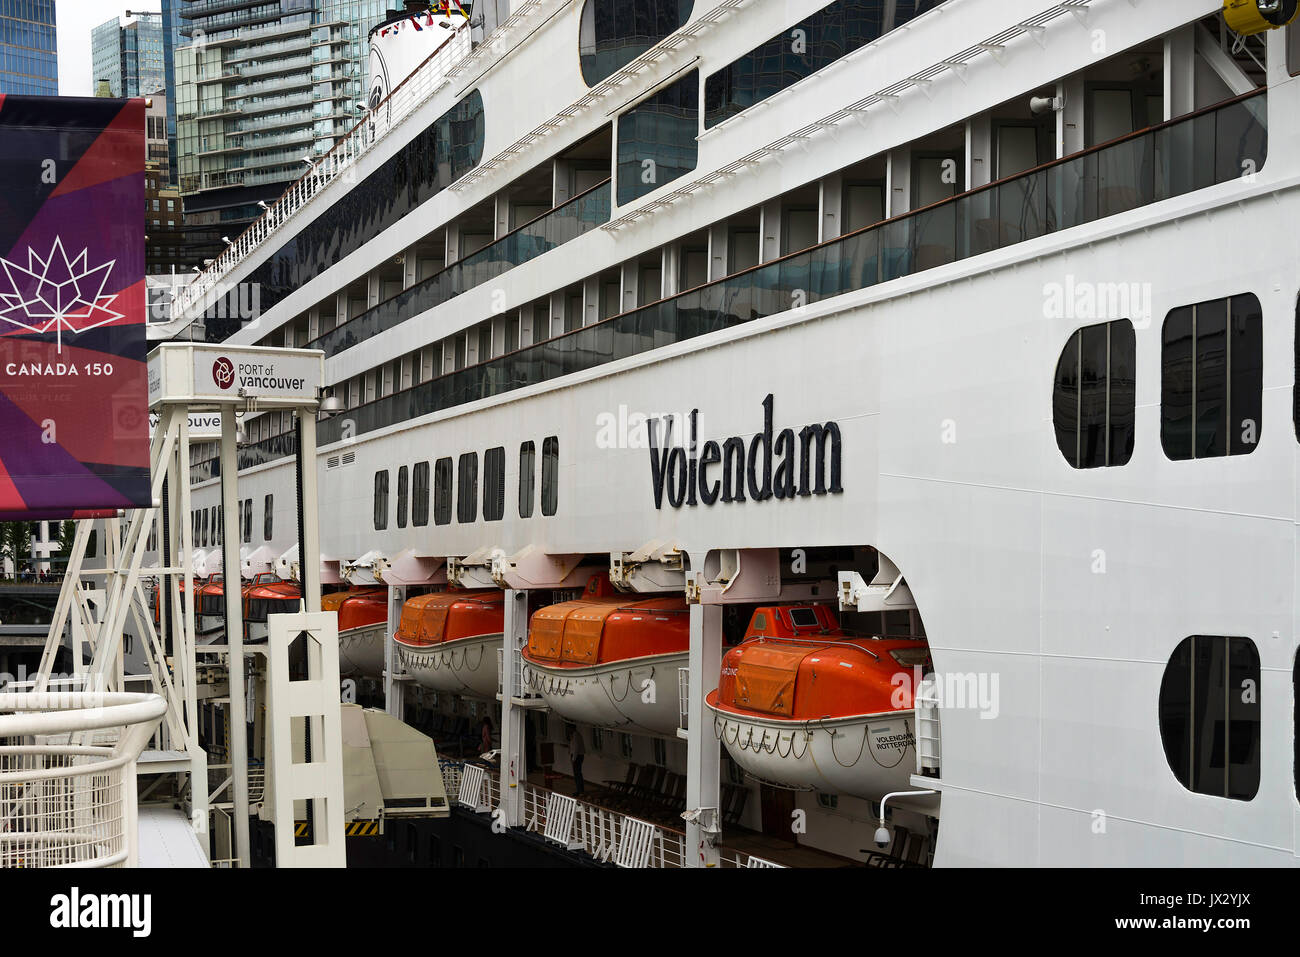 Le navire de croisière Holland America Line volendam amarré dans le port de Vancouver, British Columbia canada Banque D'Images